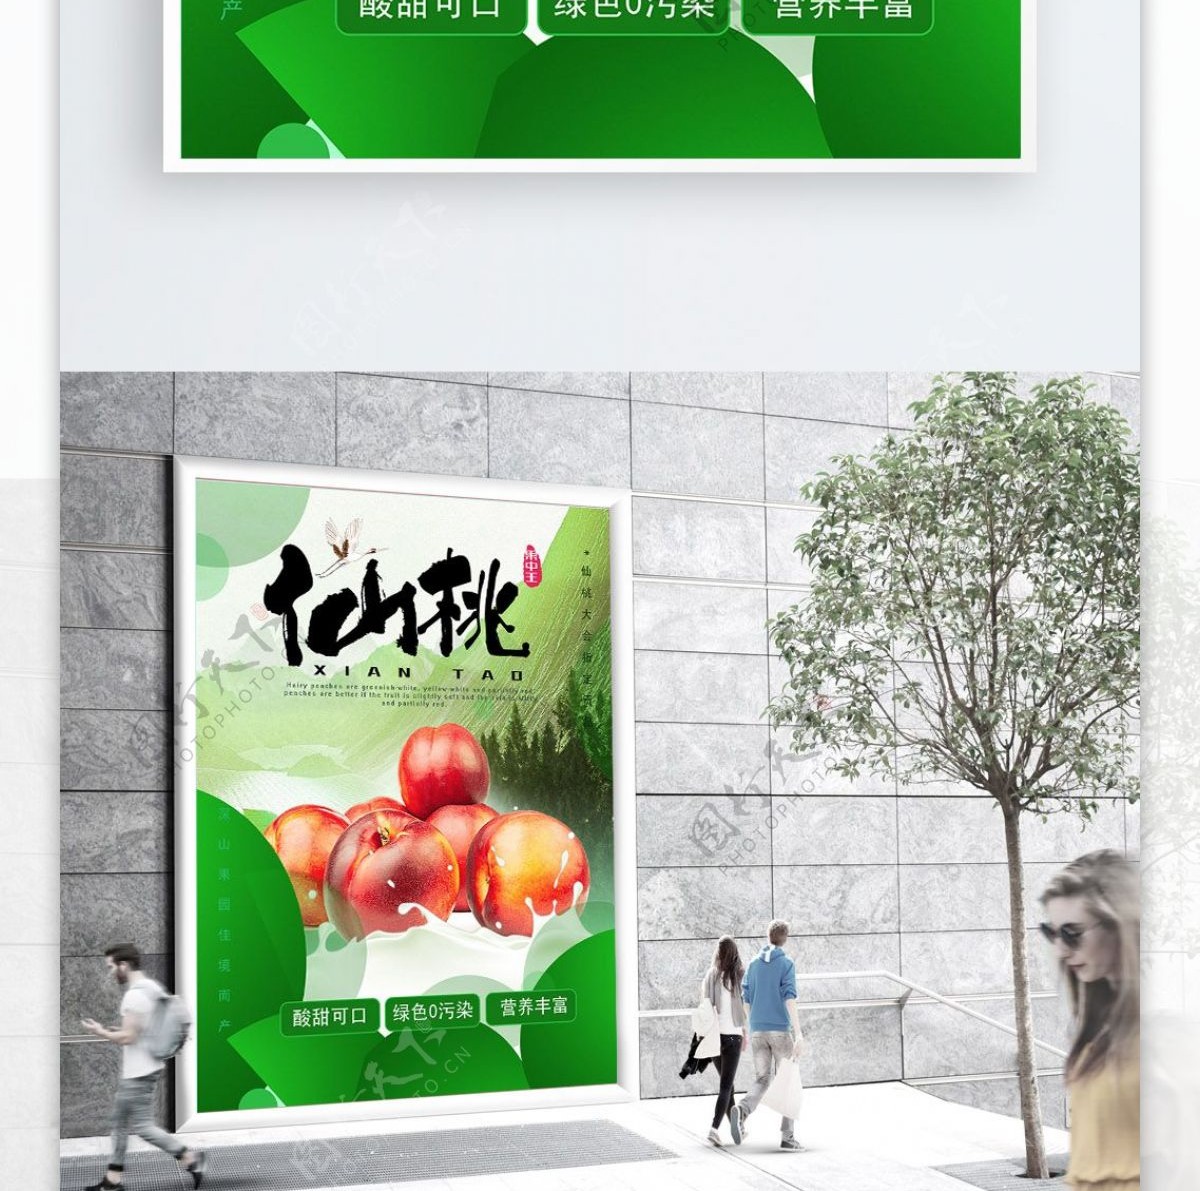 绿色鲜嫩桃子水果海报